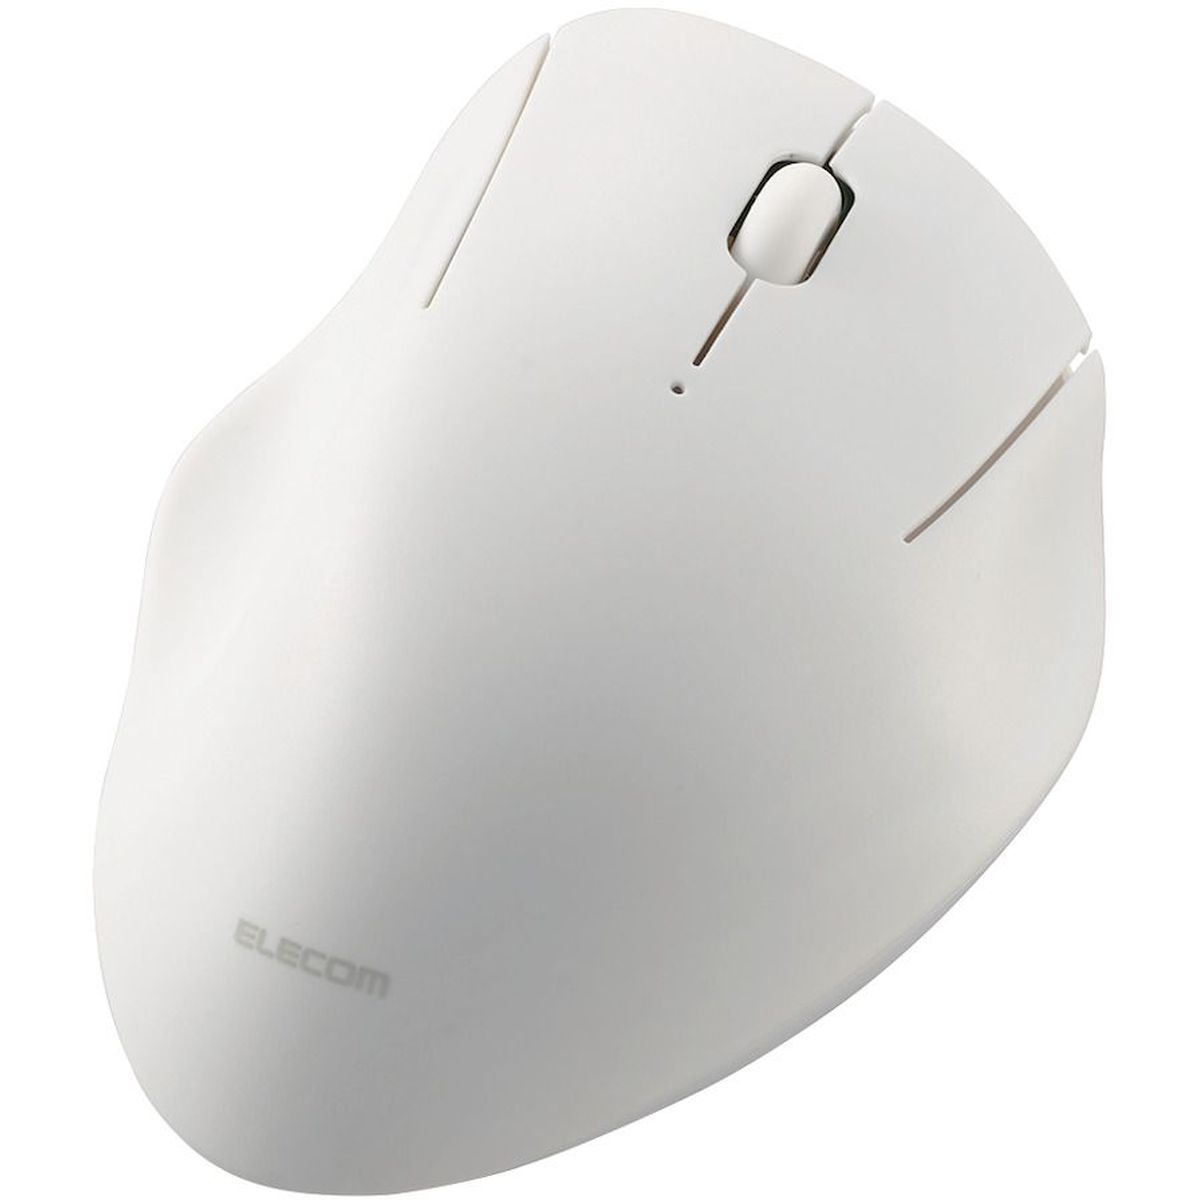 マウス/Bluetooth/3ボタン/抗菌/静音設計/ホワイト